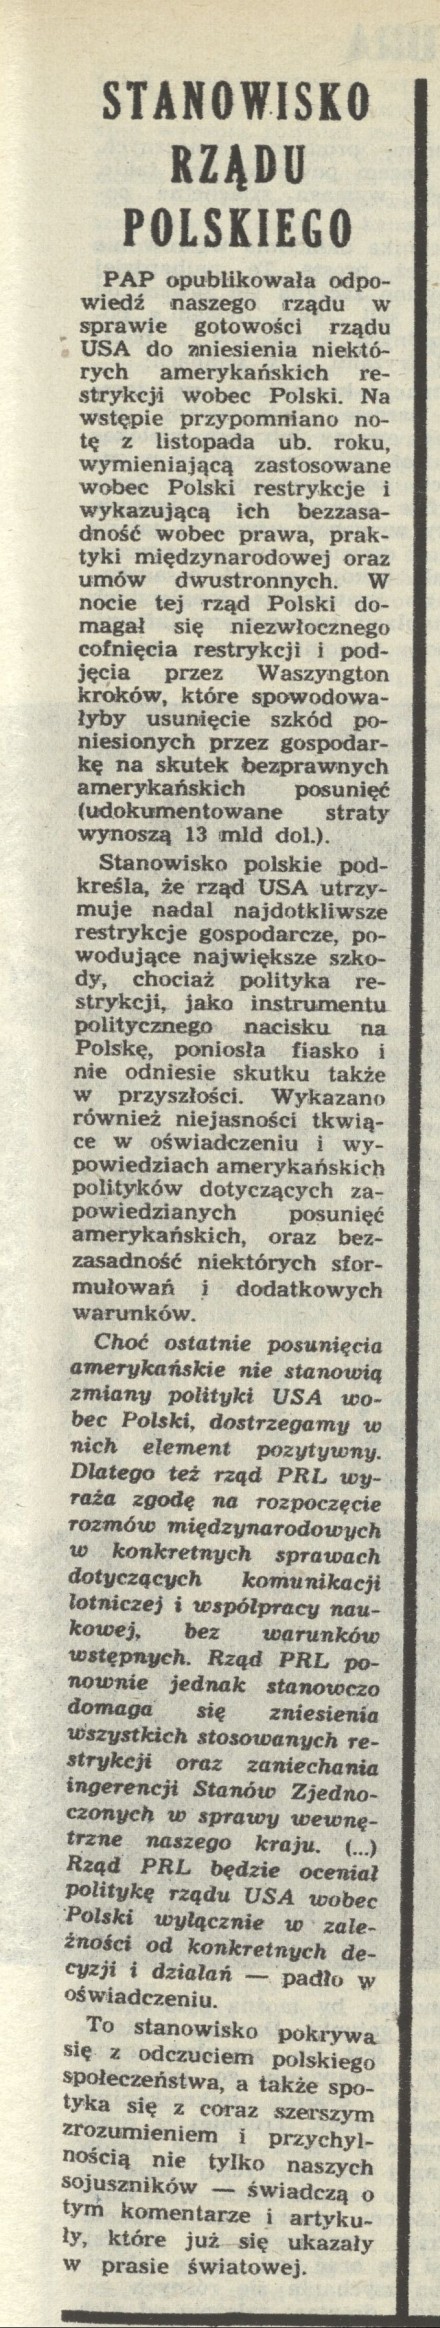 Stanowisko rządu polskiego